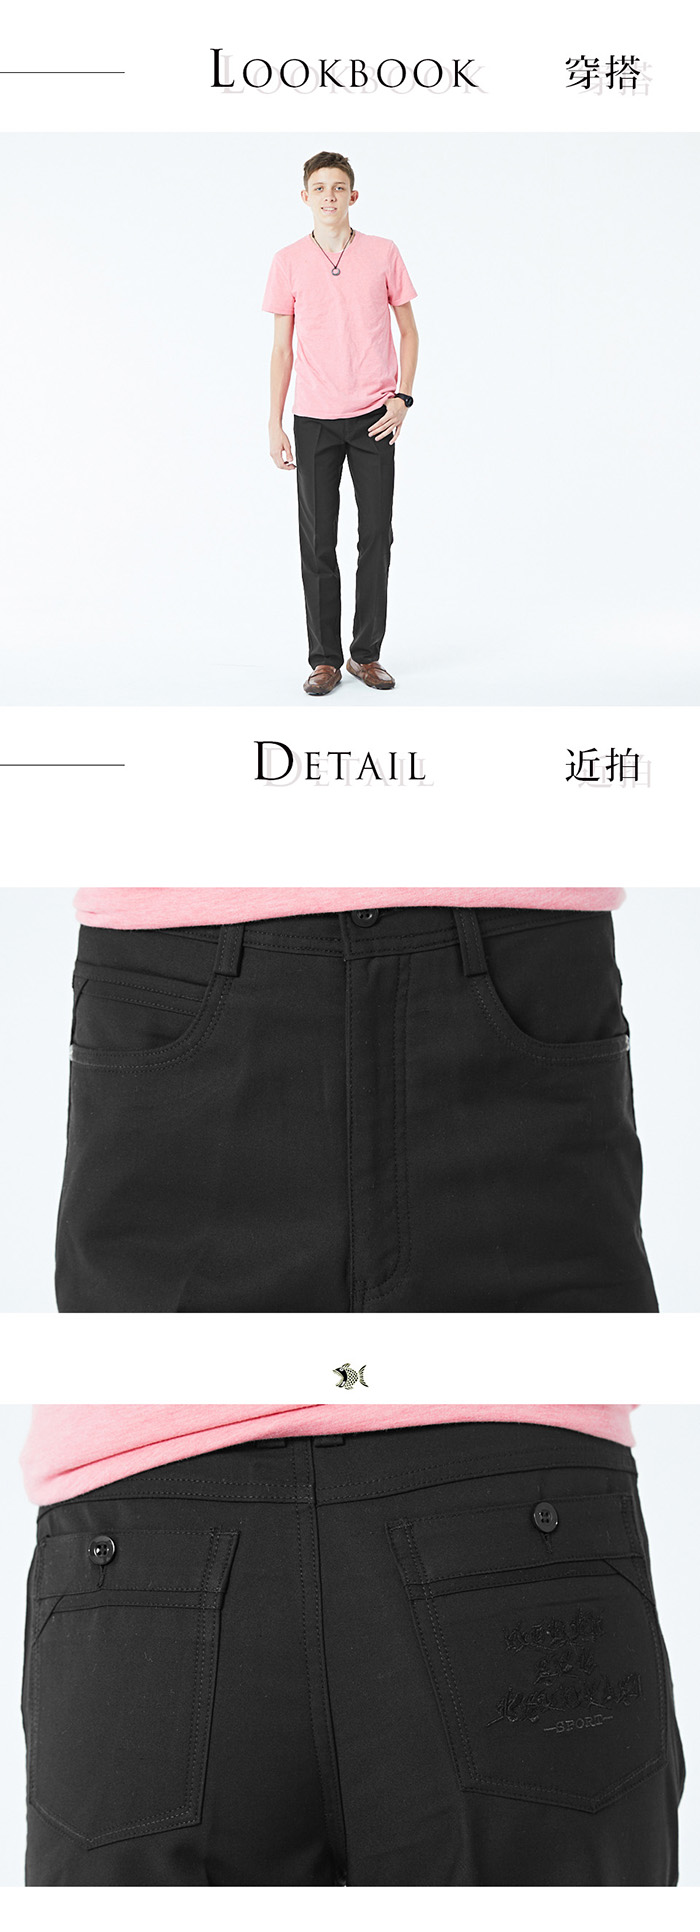 【NST Jeans】日本布料_商務質男 無盡的黑 休閒男褲(中腰直筒) 398(66617)